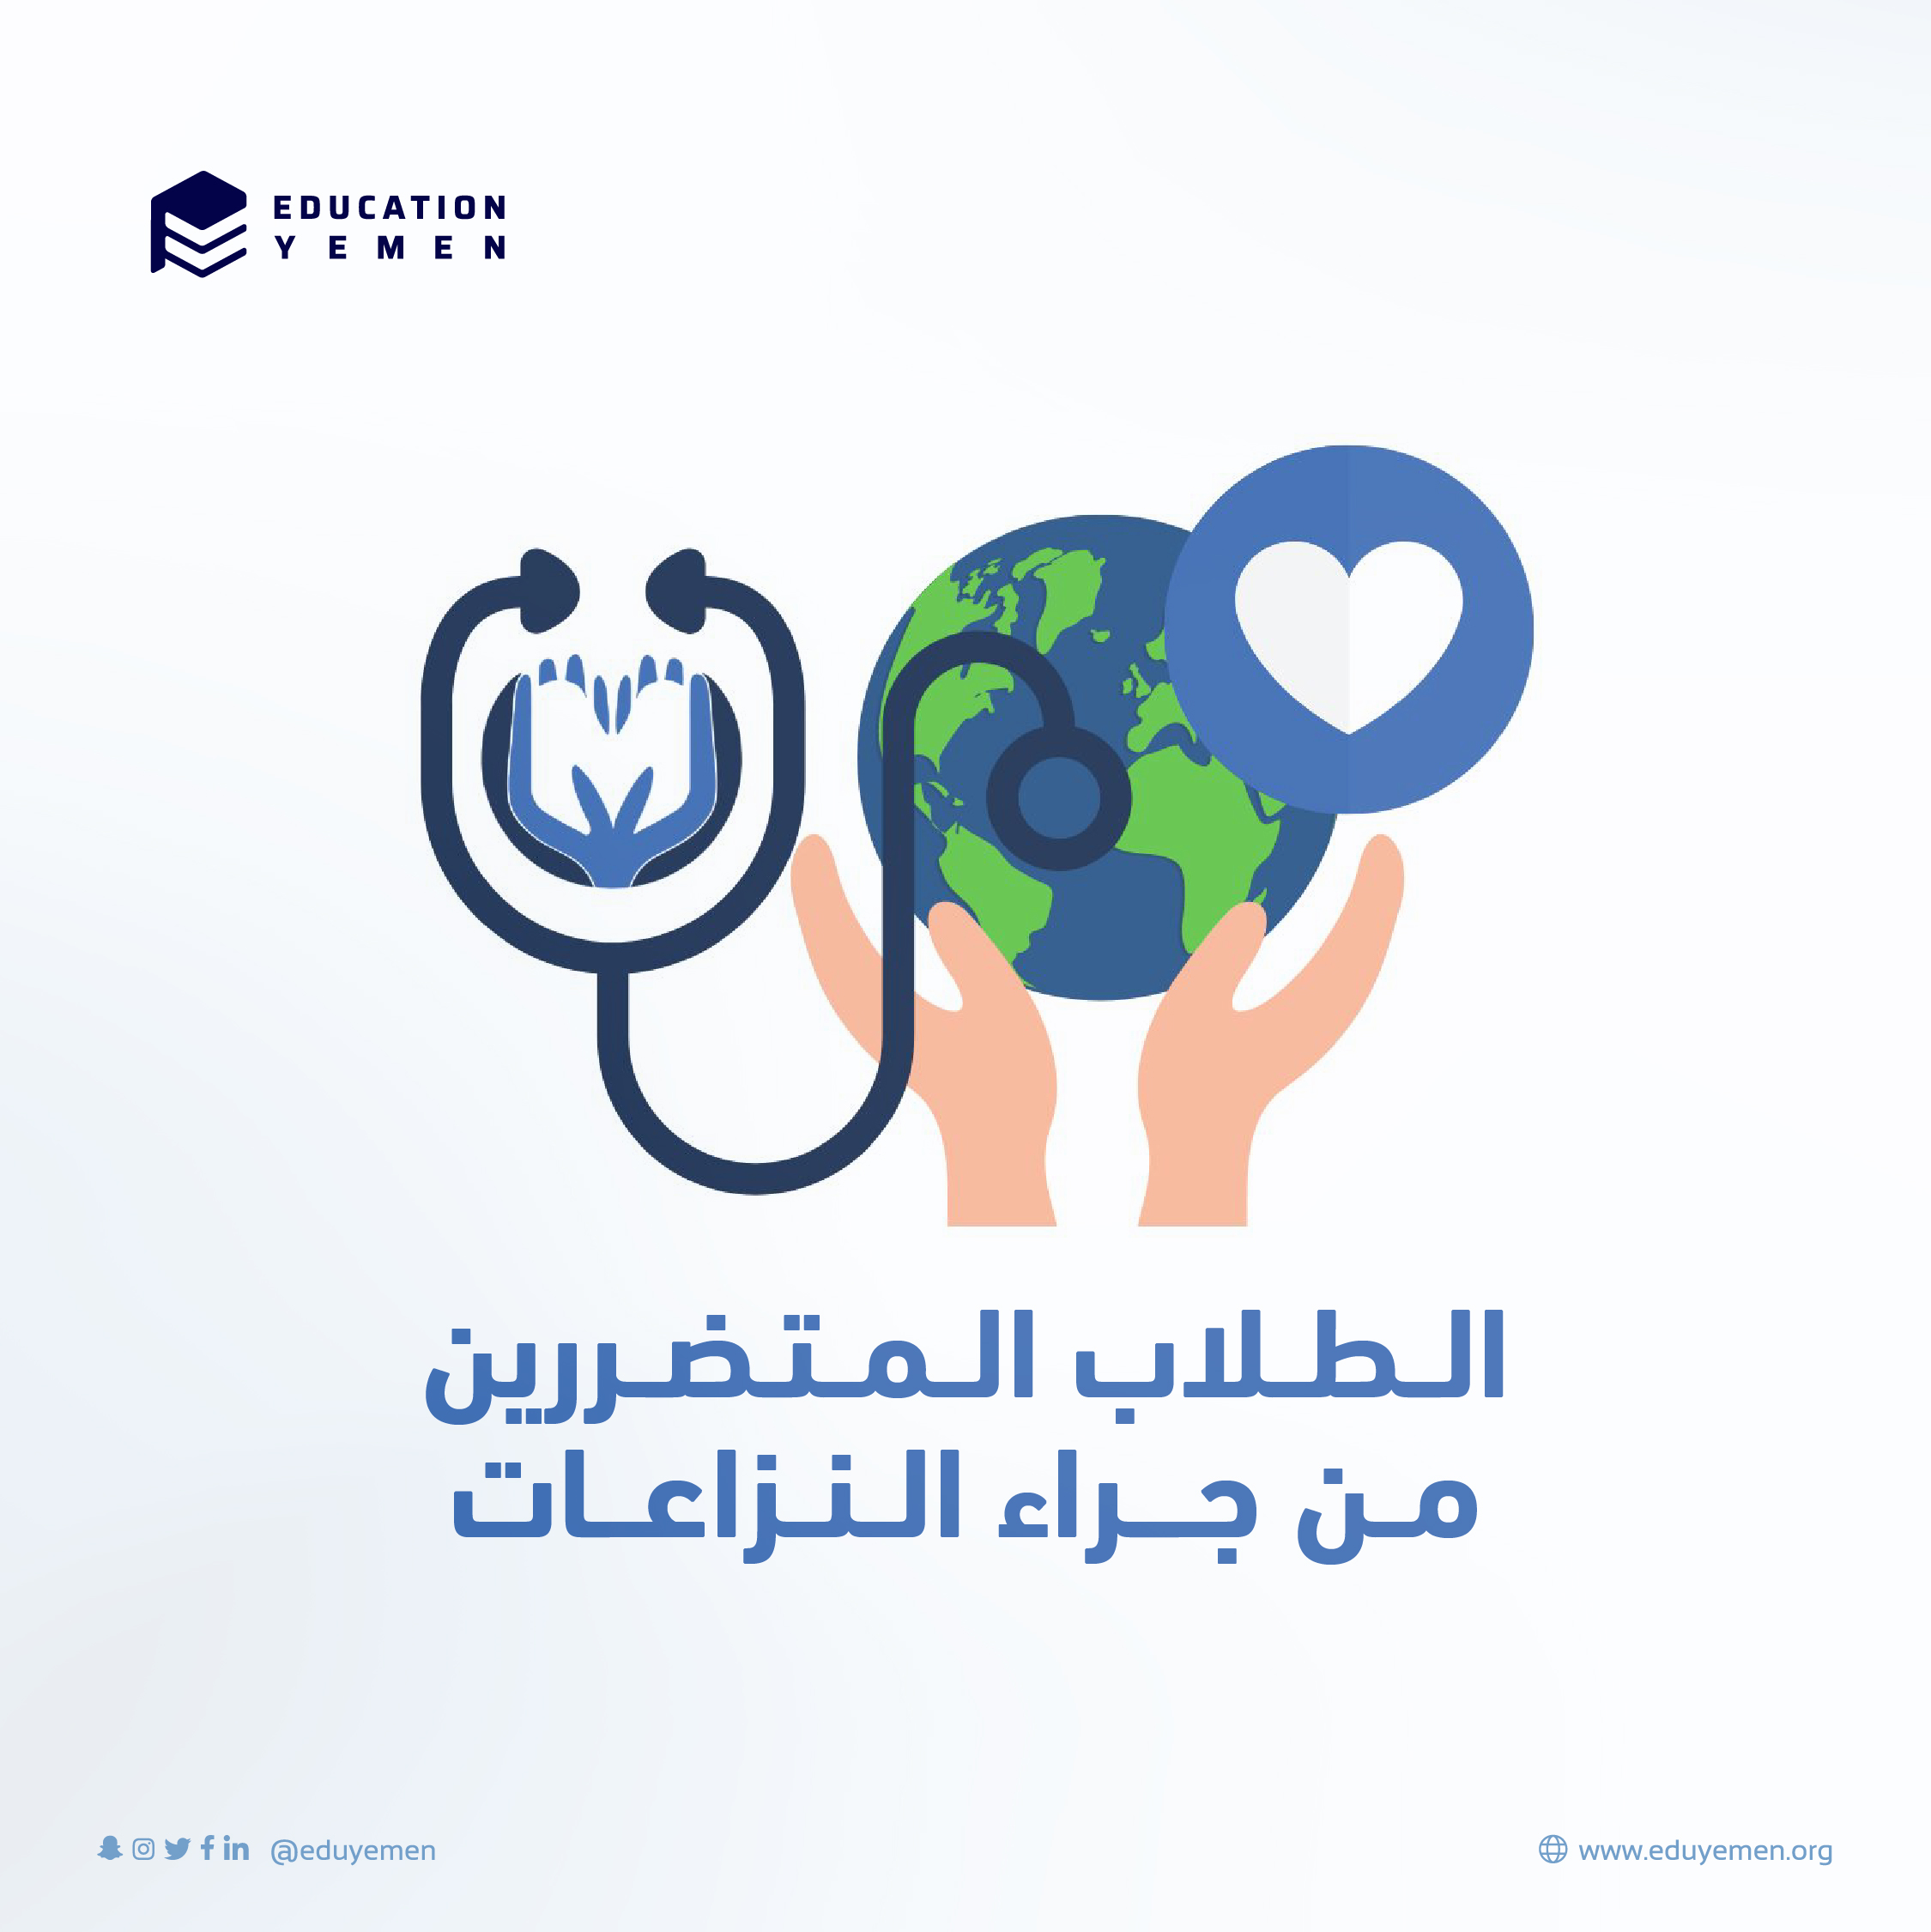 دورات مقدمة لطلاب الطب من منظمة Make a Medic البريطانية بالشراكة مع مؤسسة إديوكيشن يمن - 2022